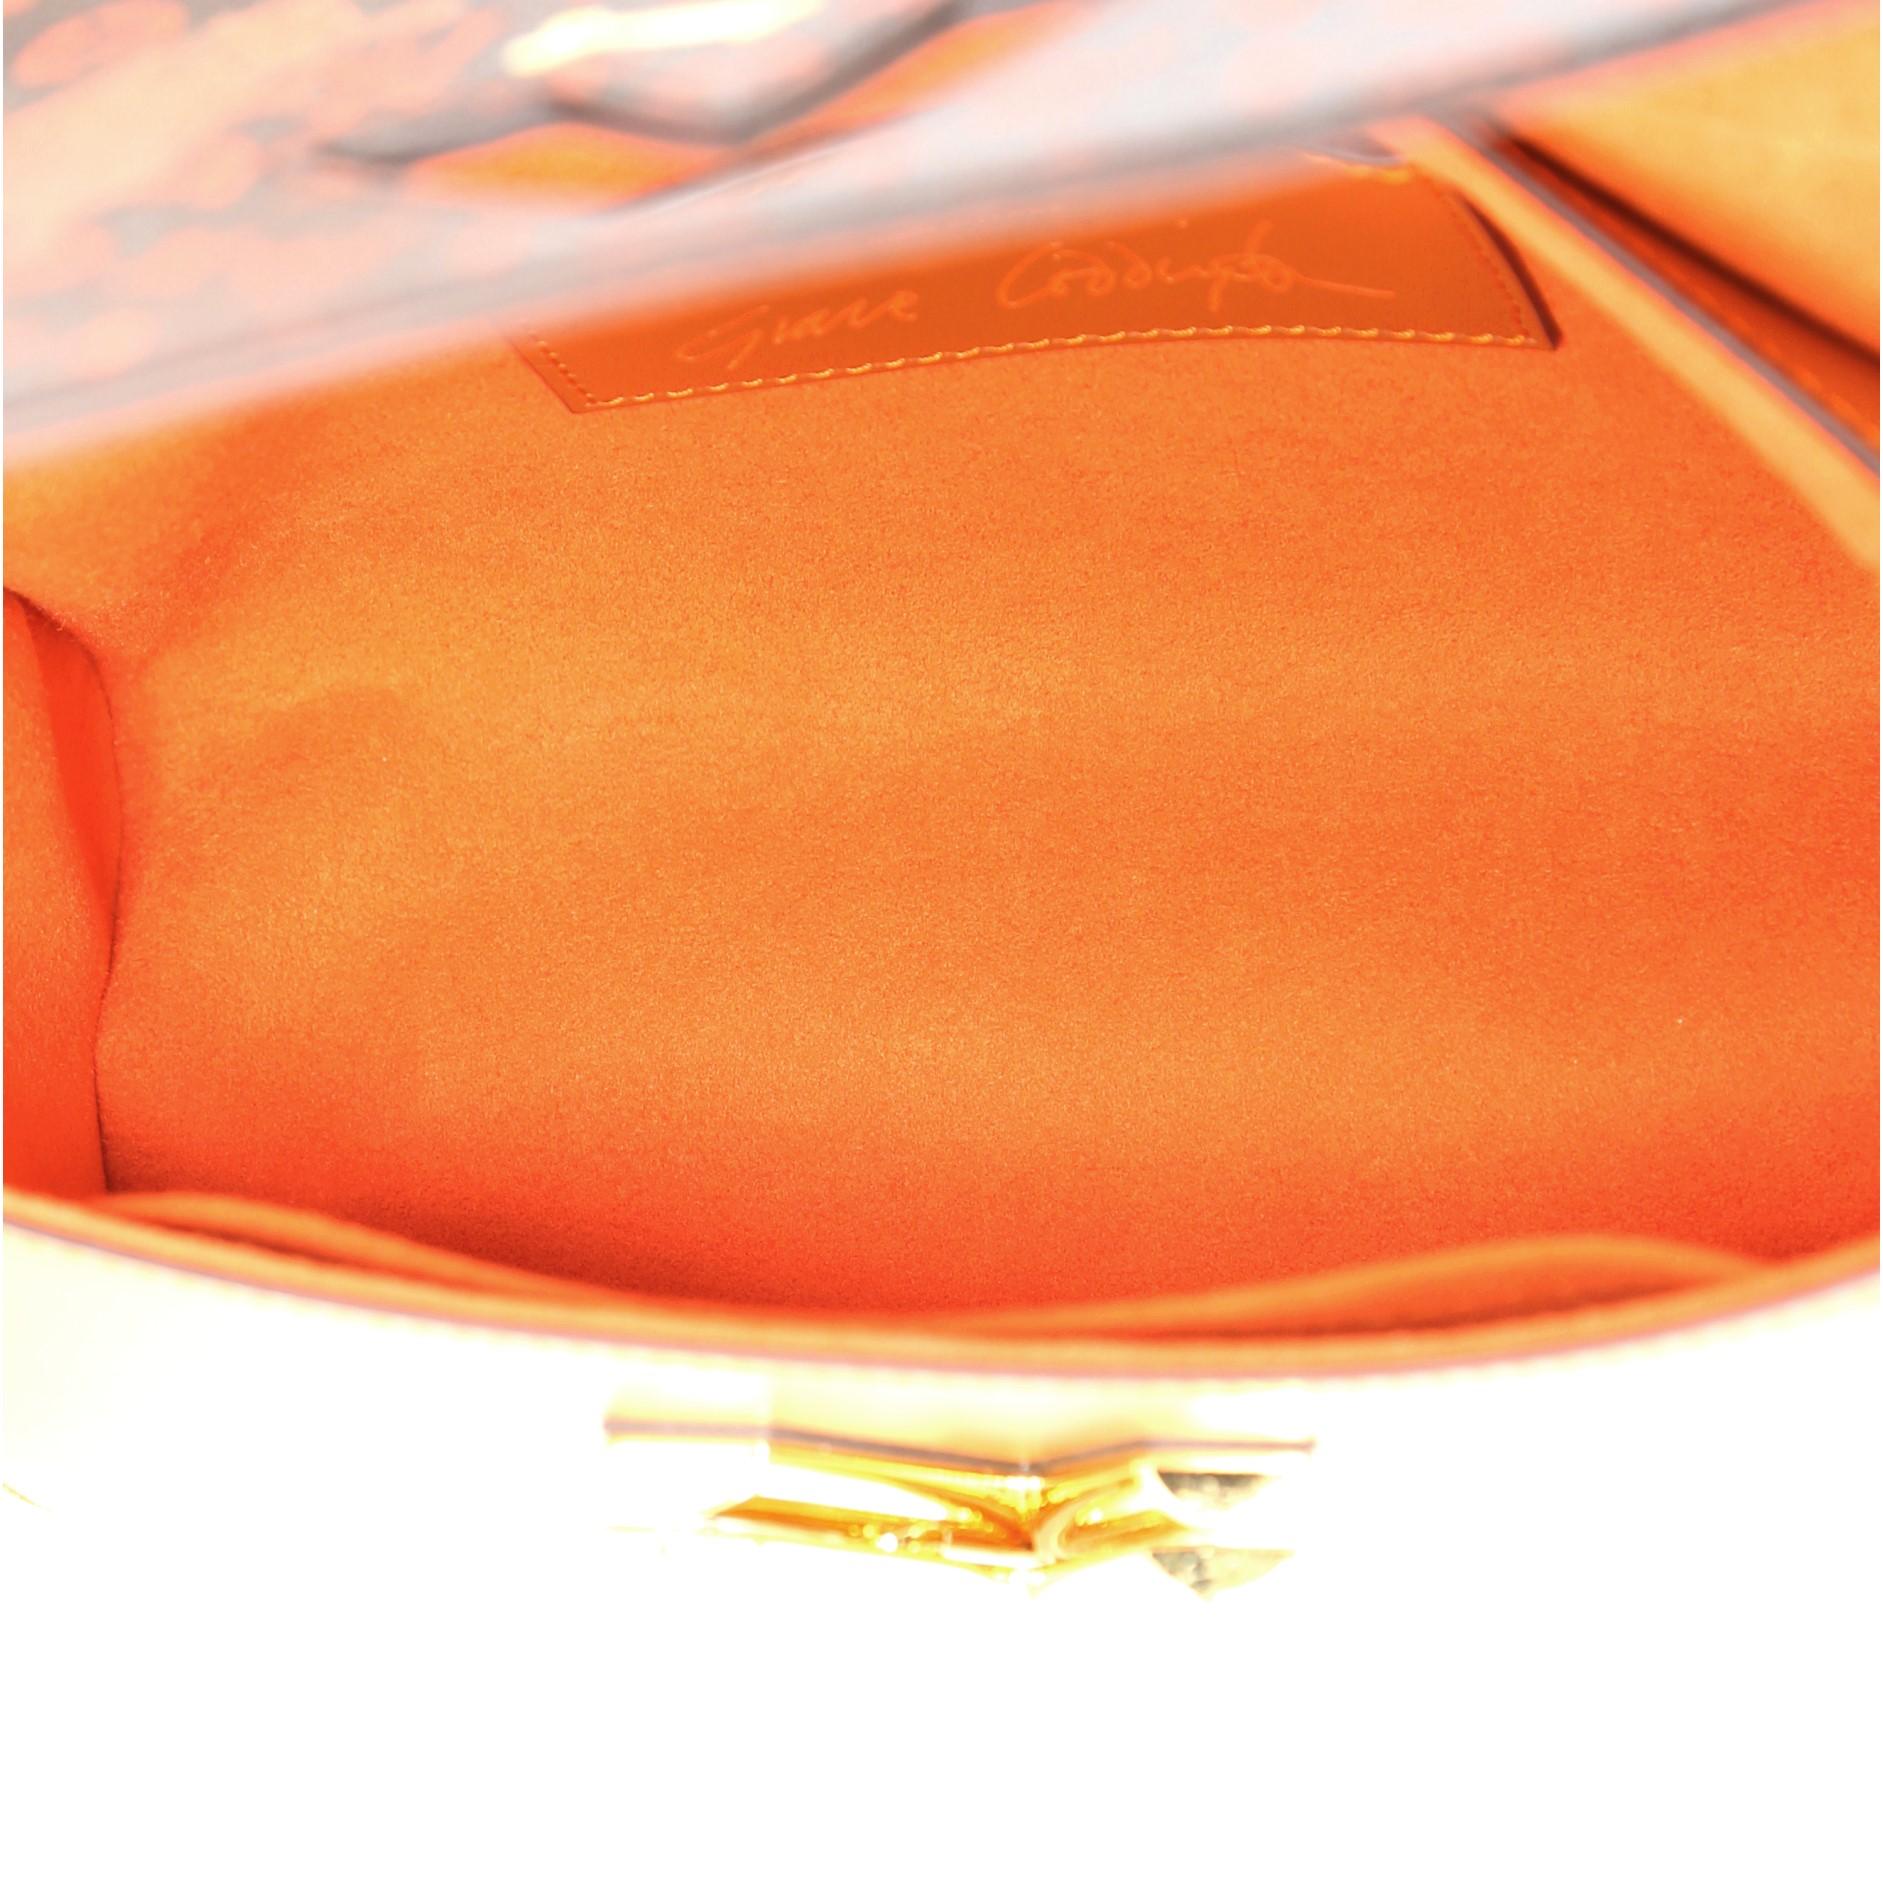 Brown Louis Vuitton Twist Handbag Limited Edition Grace Coddington Catogram Canvas MM